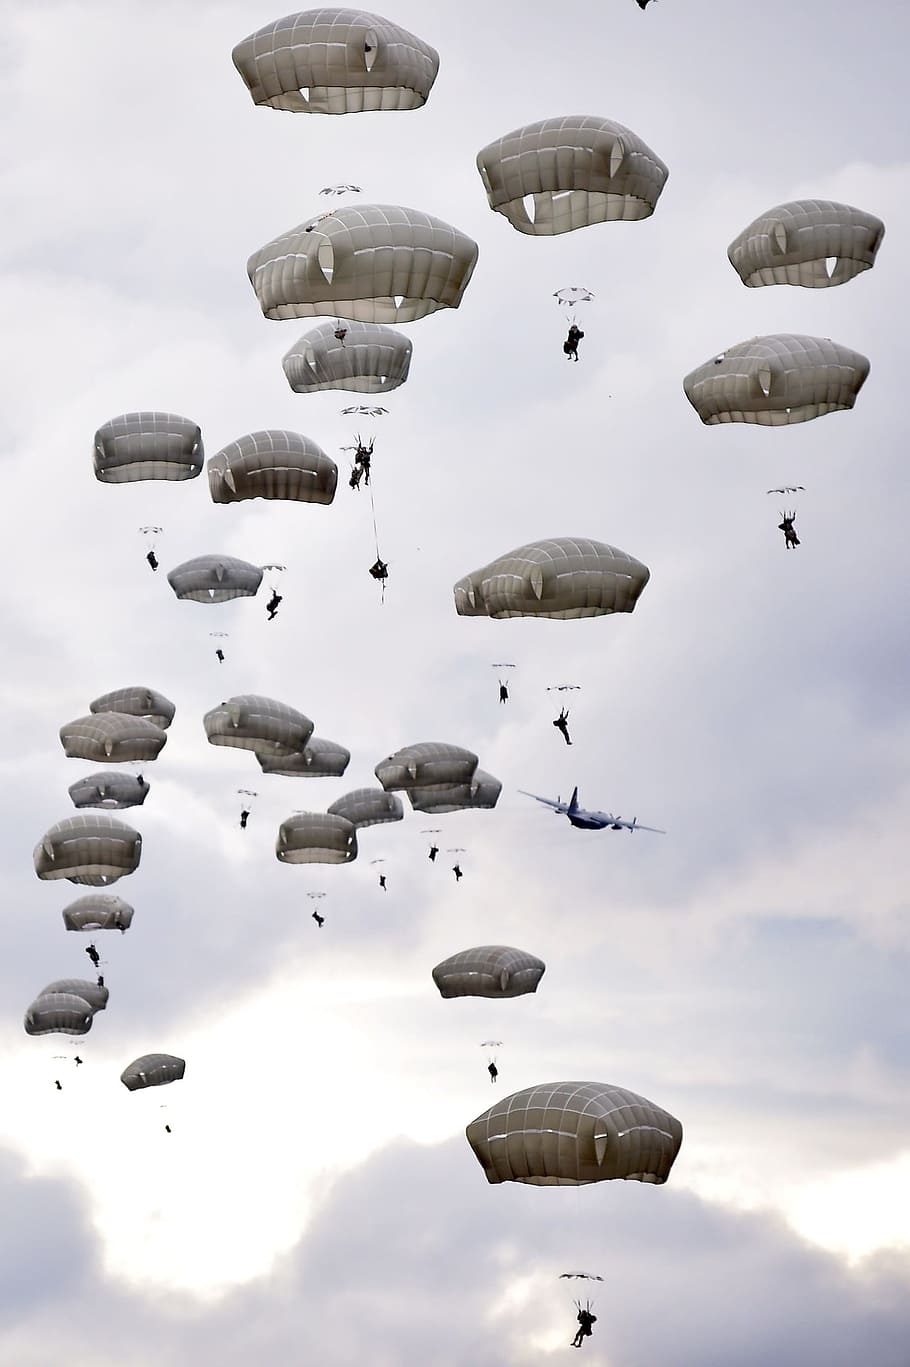 gente parapente, paracaídas, entrenamiento, paracaidismo, saltos, militar, aerotransportado, avión, paracaidistas, americano